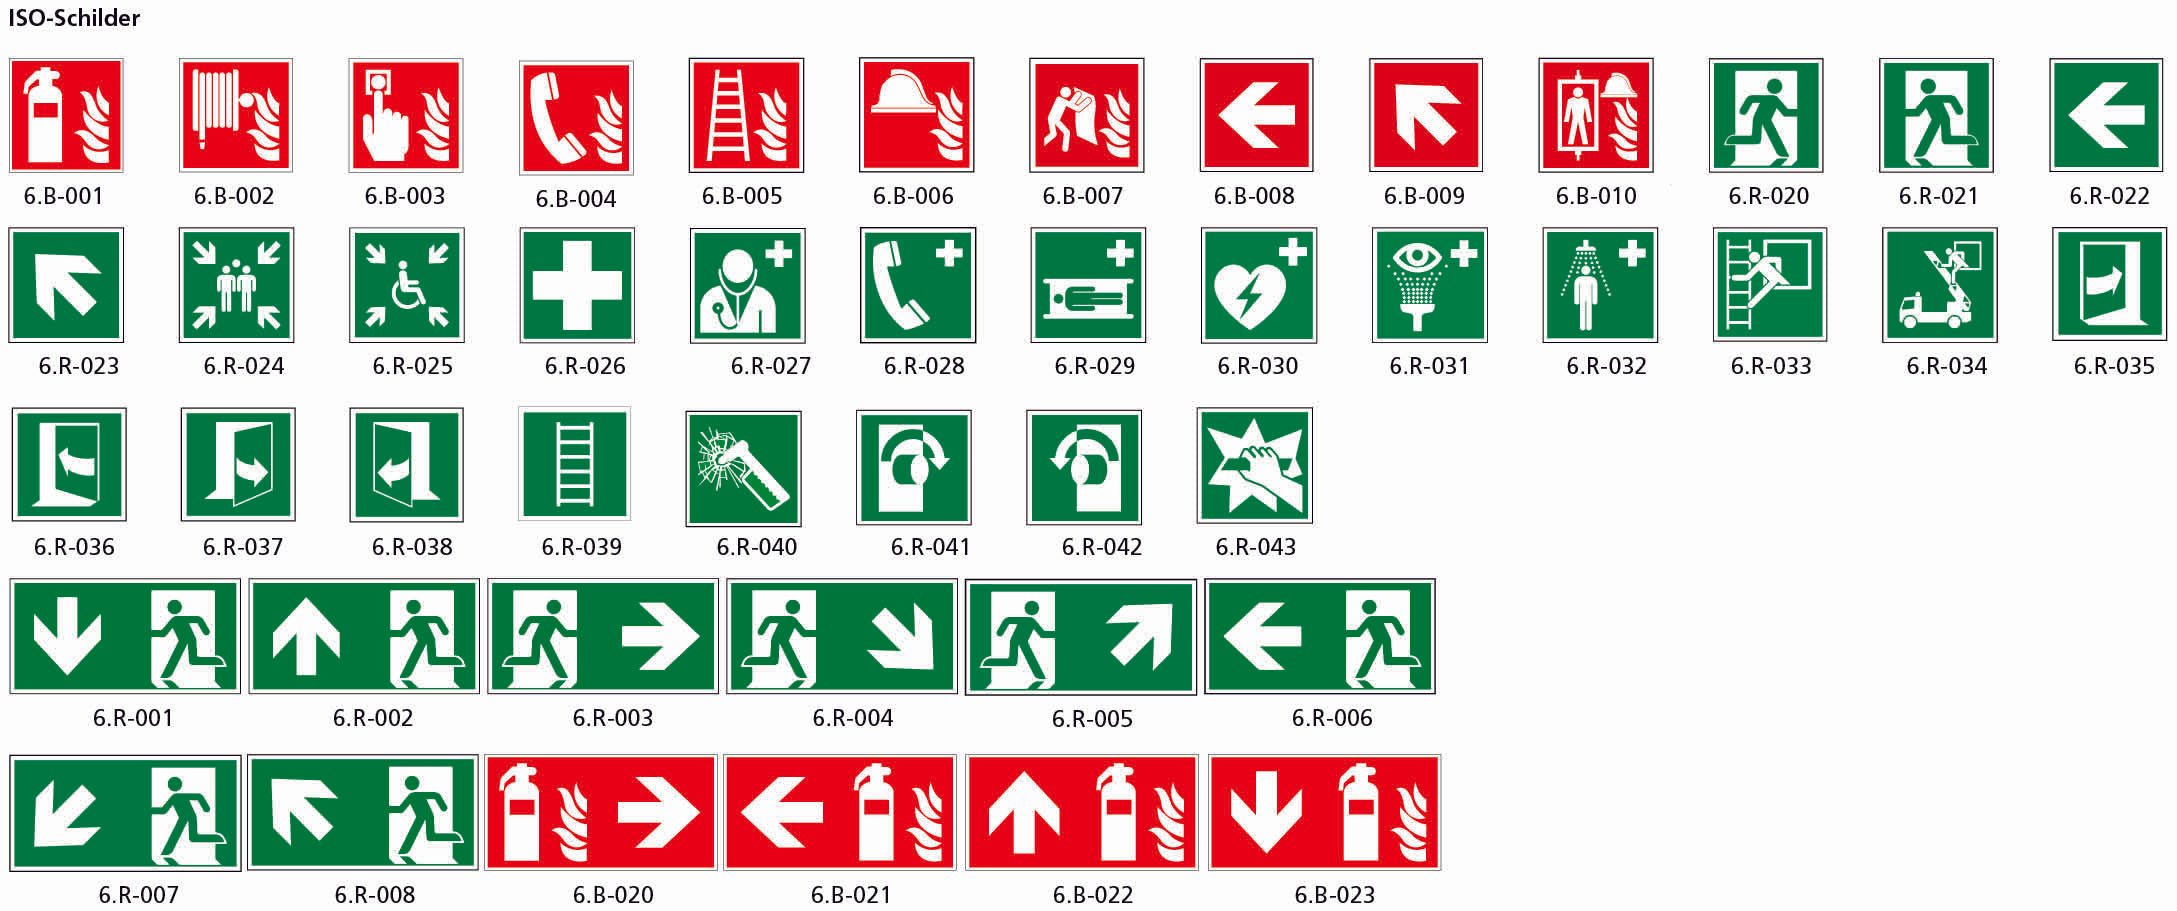 Fahnenschild doppelseitig, Rettungs- und Brandschutzzeichen, nachleuchtend, PM, 300 x 150 mm, gemäss Logobibliothek